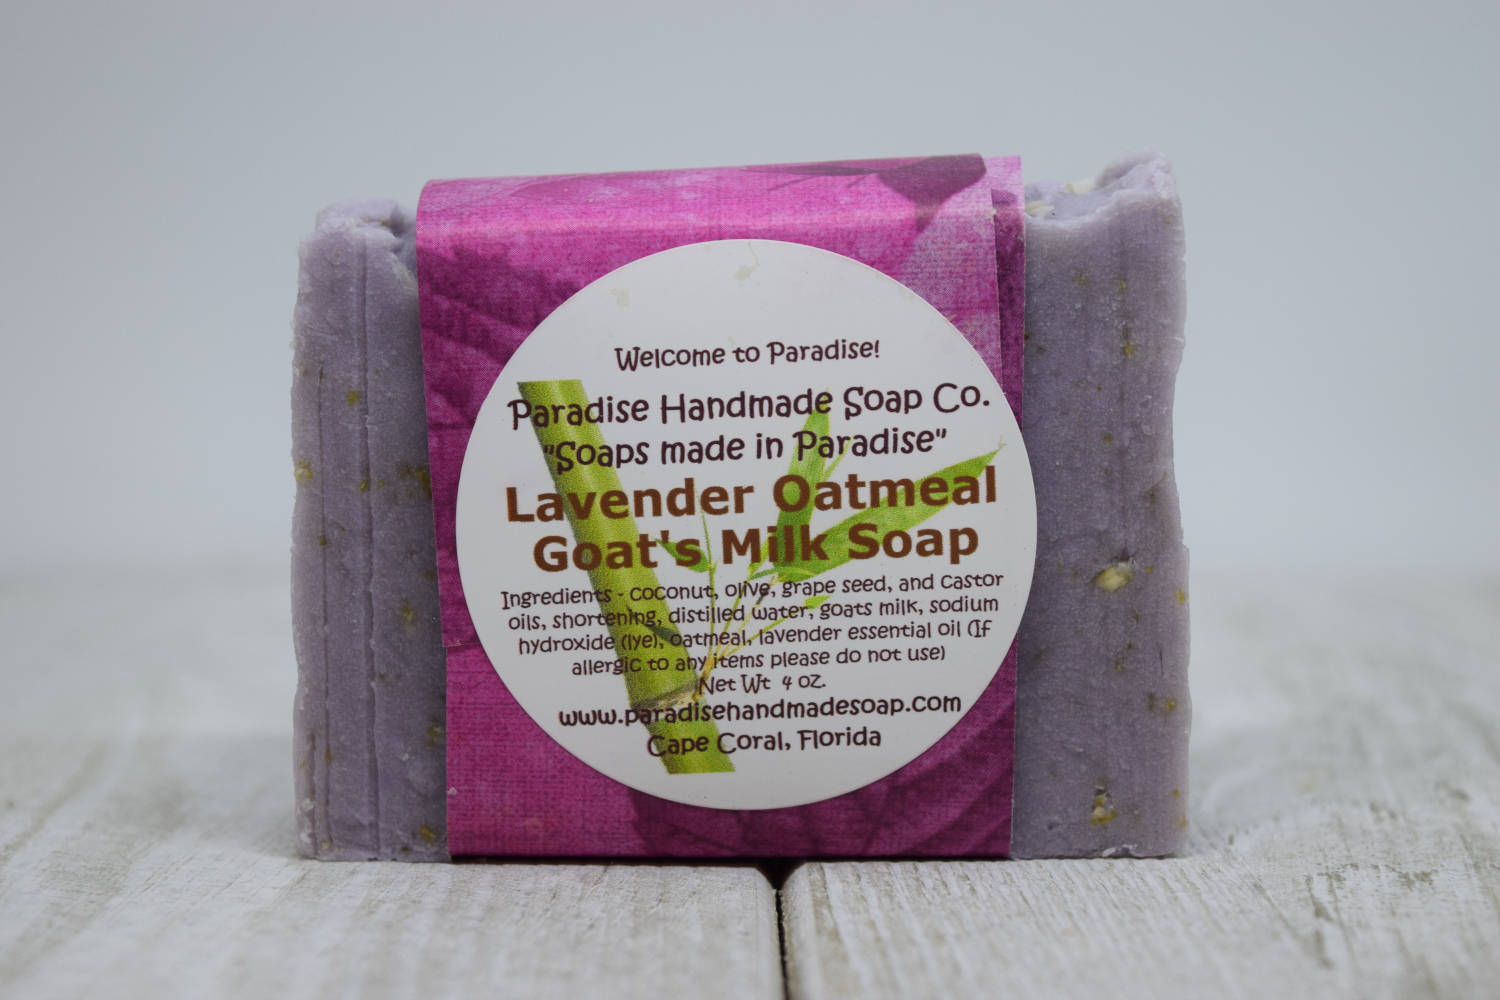 Lavender Oatmeal Goats Milk Soap – Paradise Handmade Soap Co.